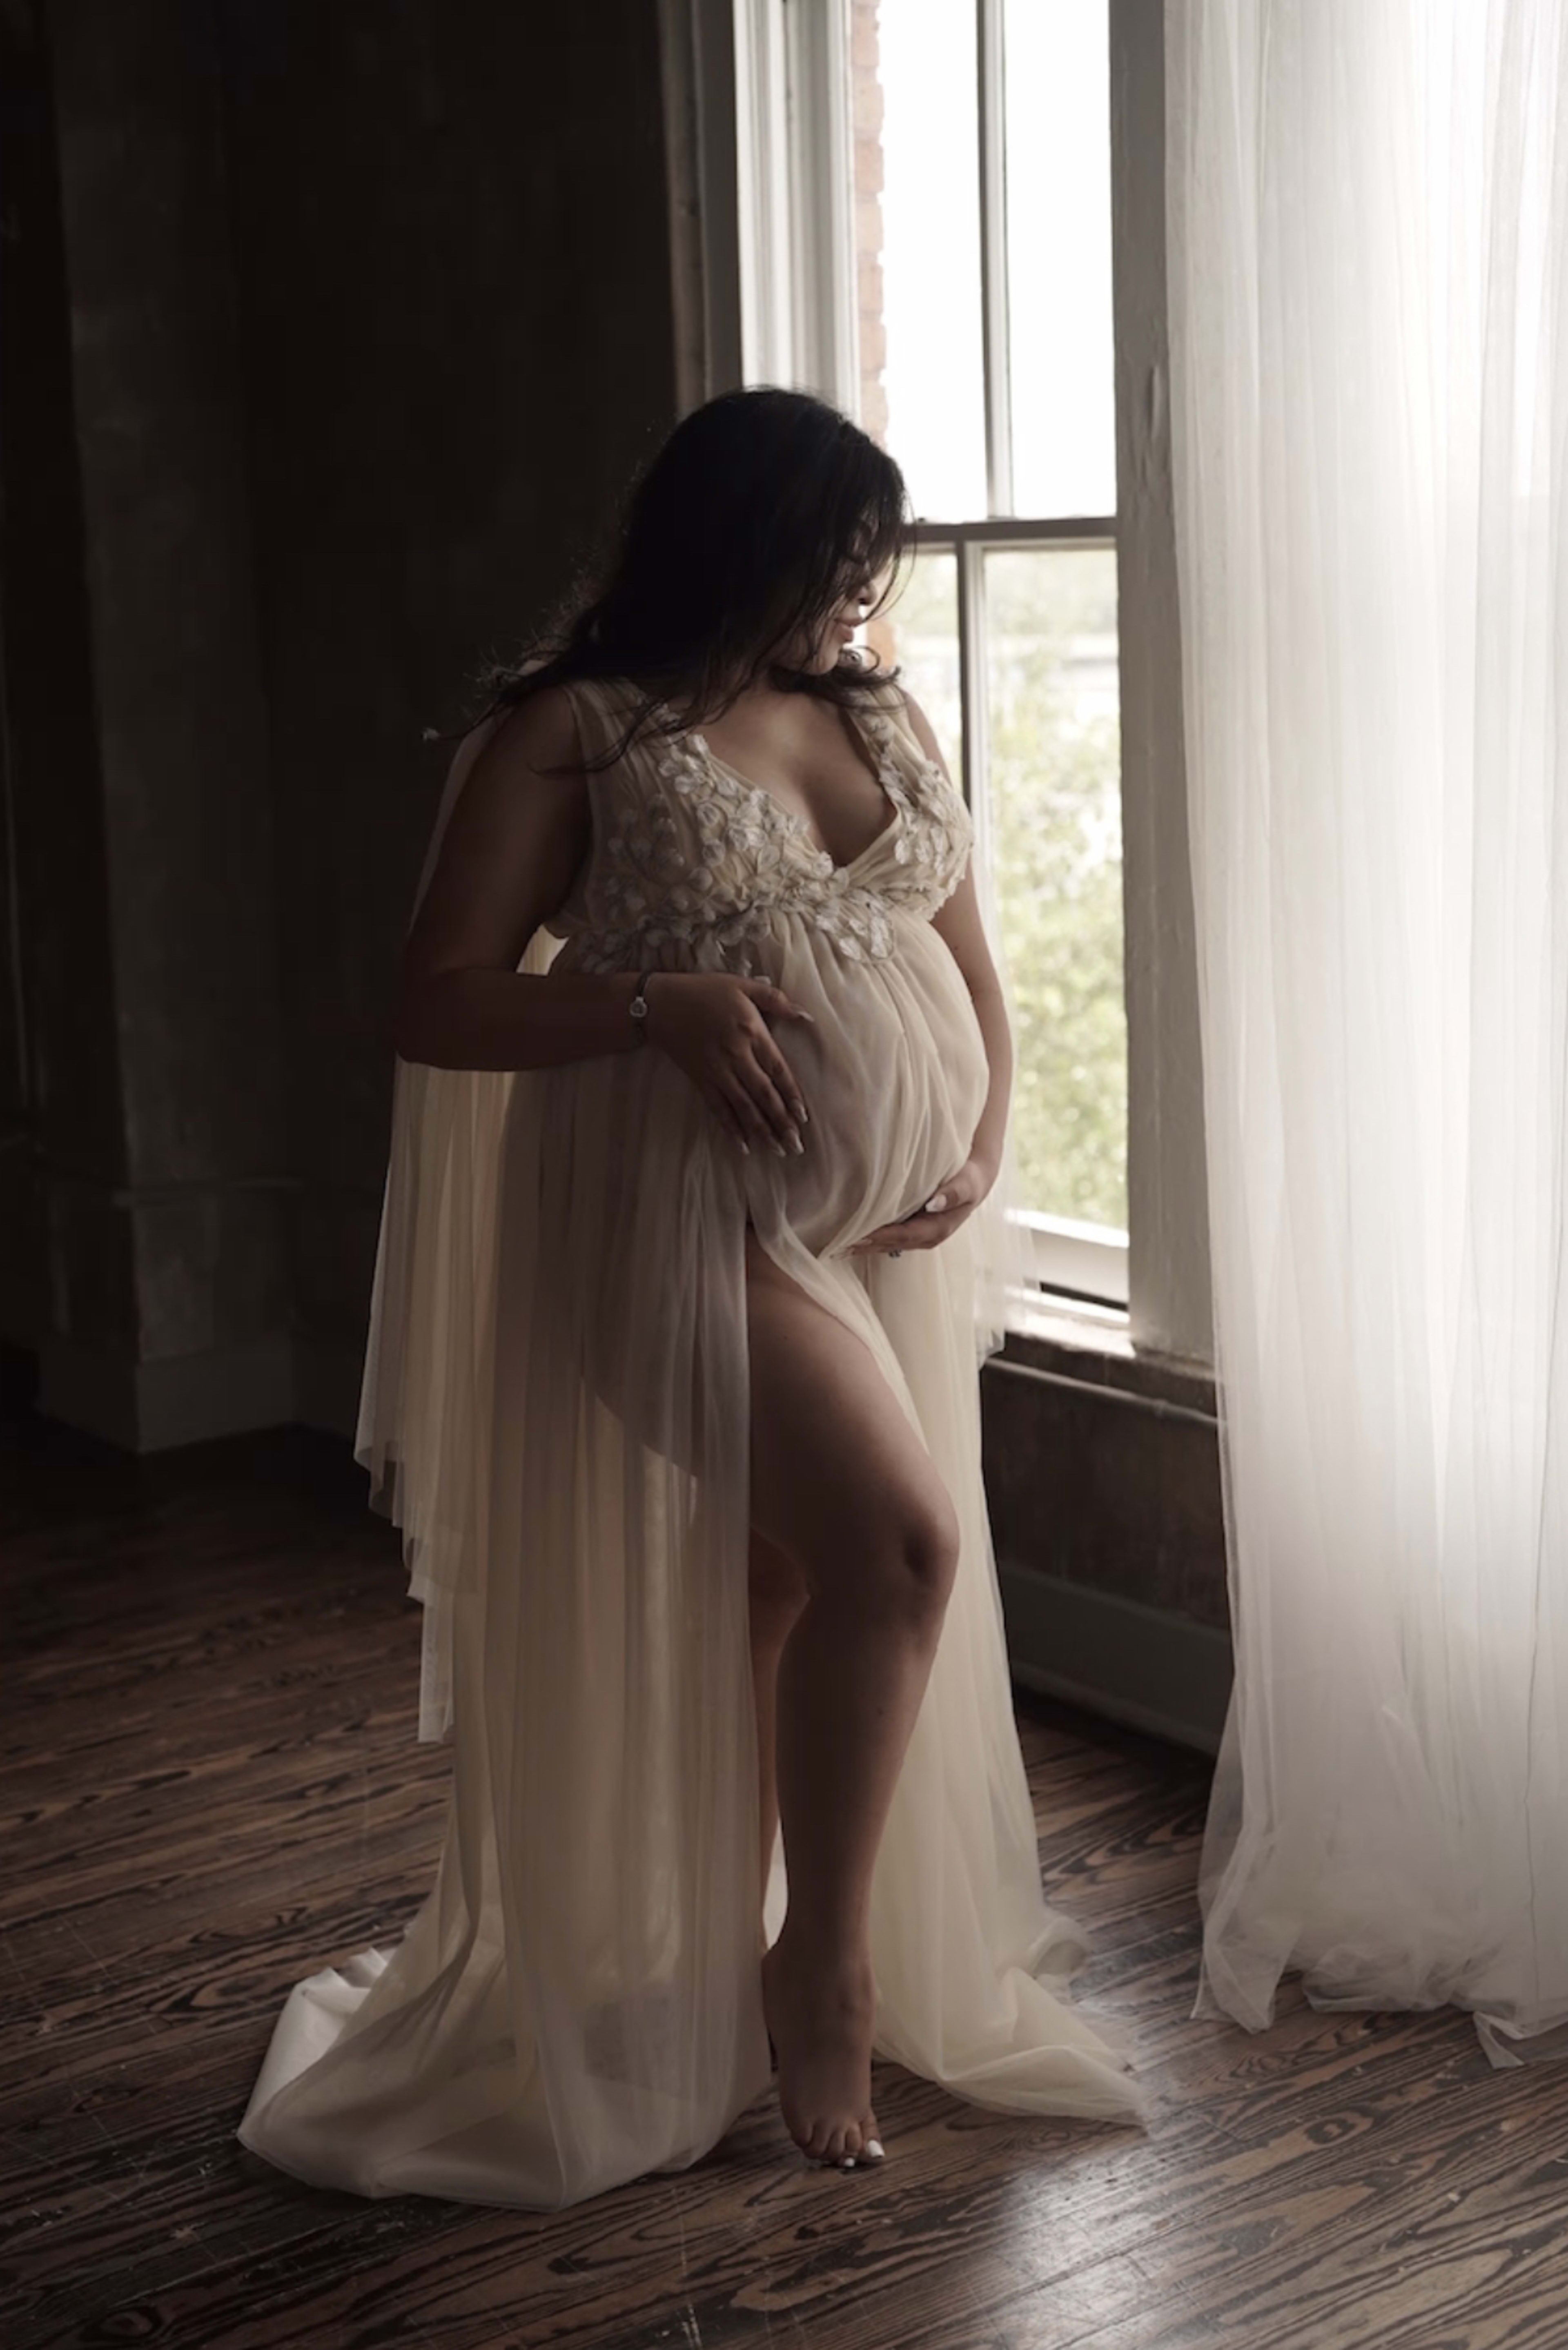 Ein Schwangerschaftsfotoshooting mit einer Frau in einem weißen Kleid, die vor einem Fenster steht.